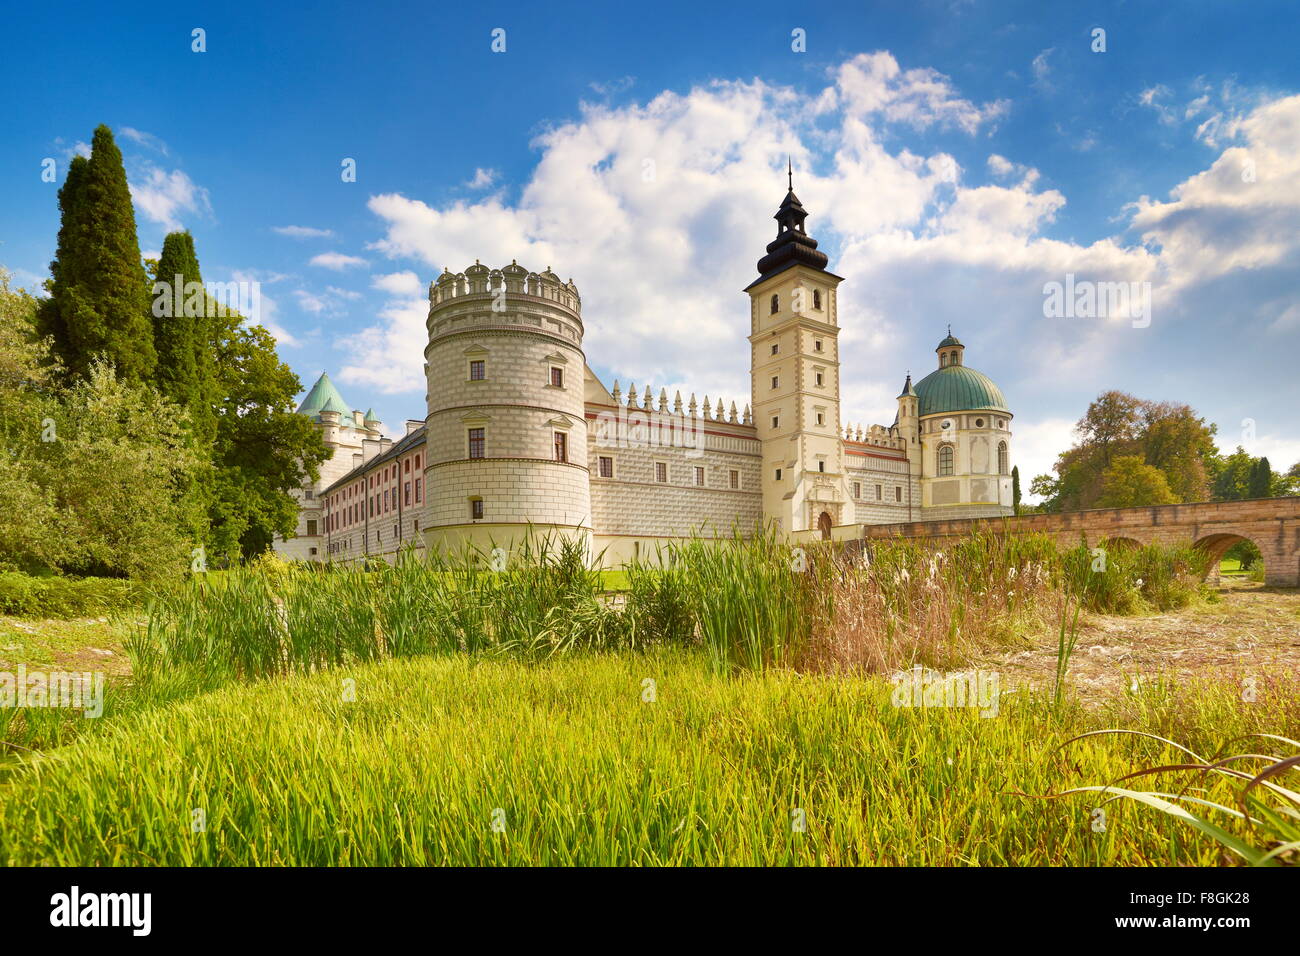 Krasiczyn Castle, Bieszczady region, Poland Stock Photo